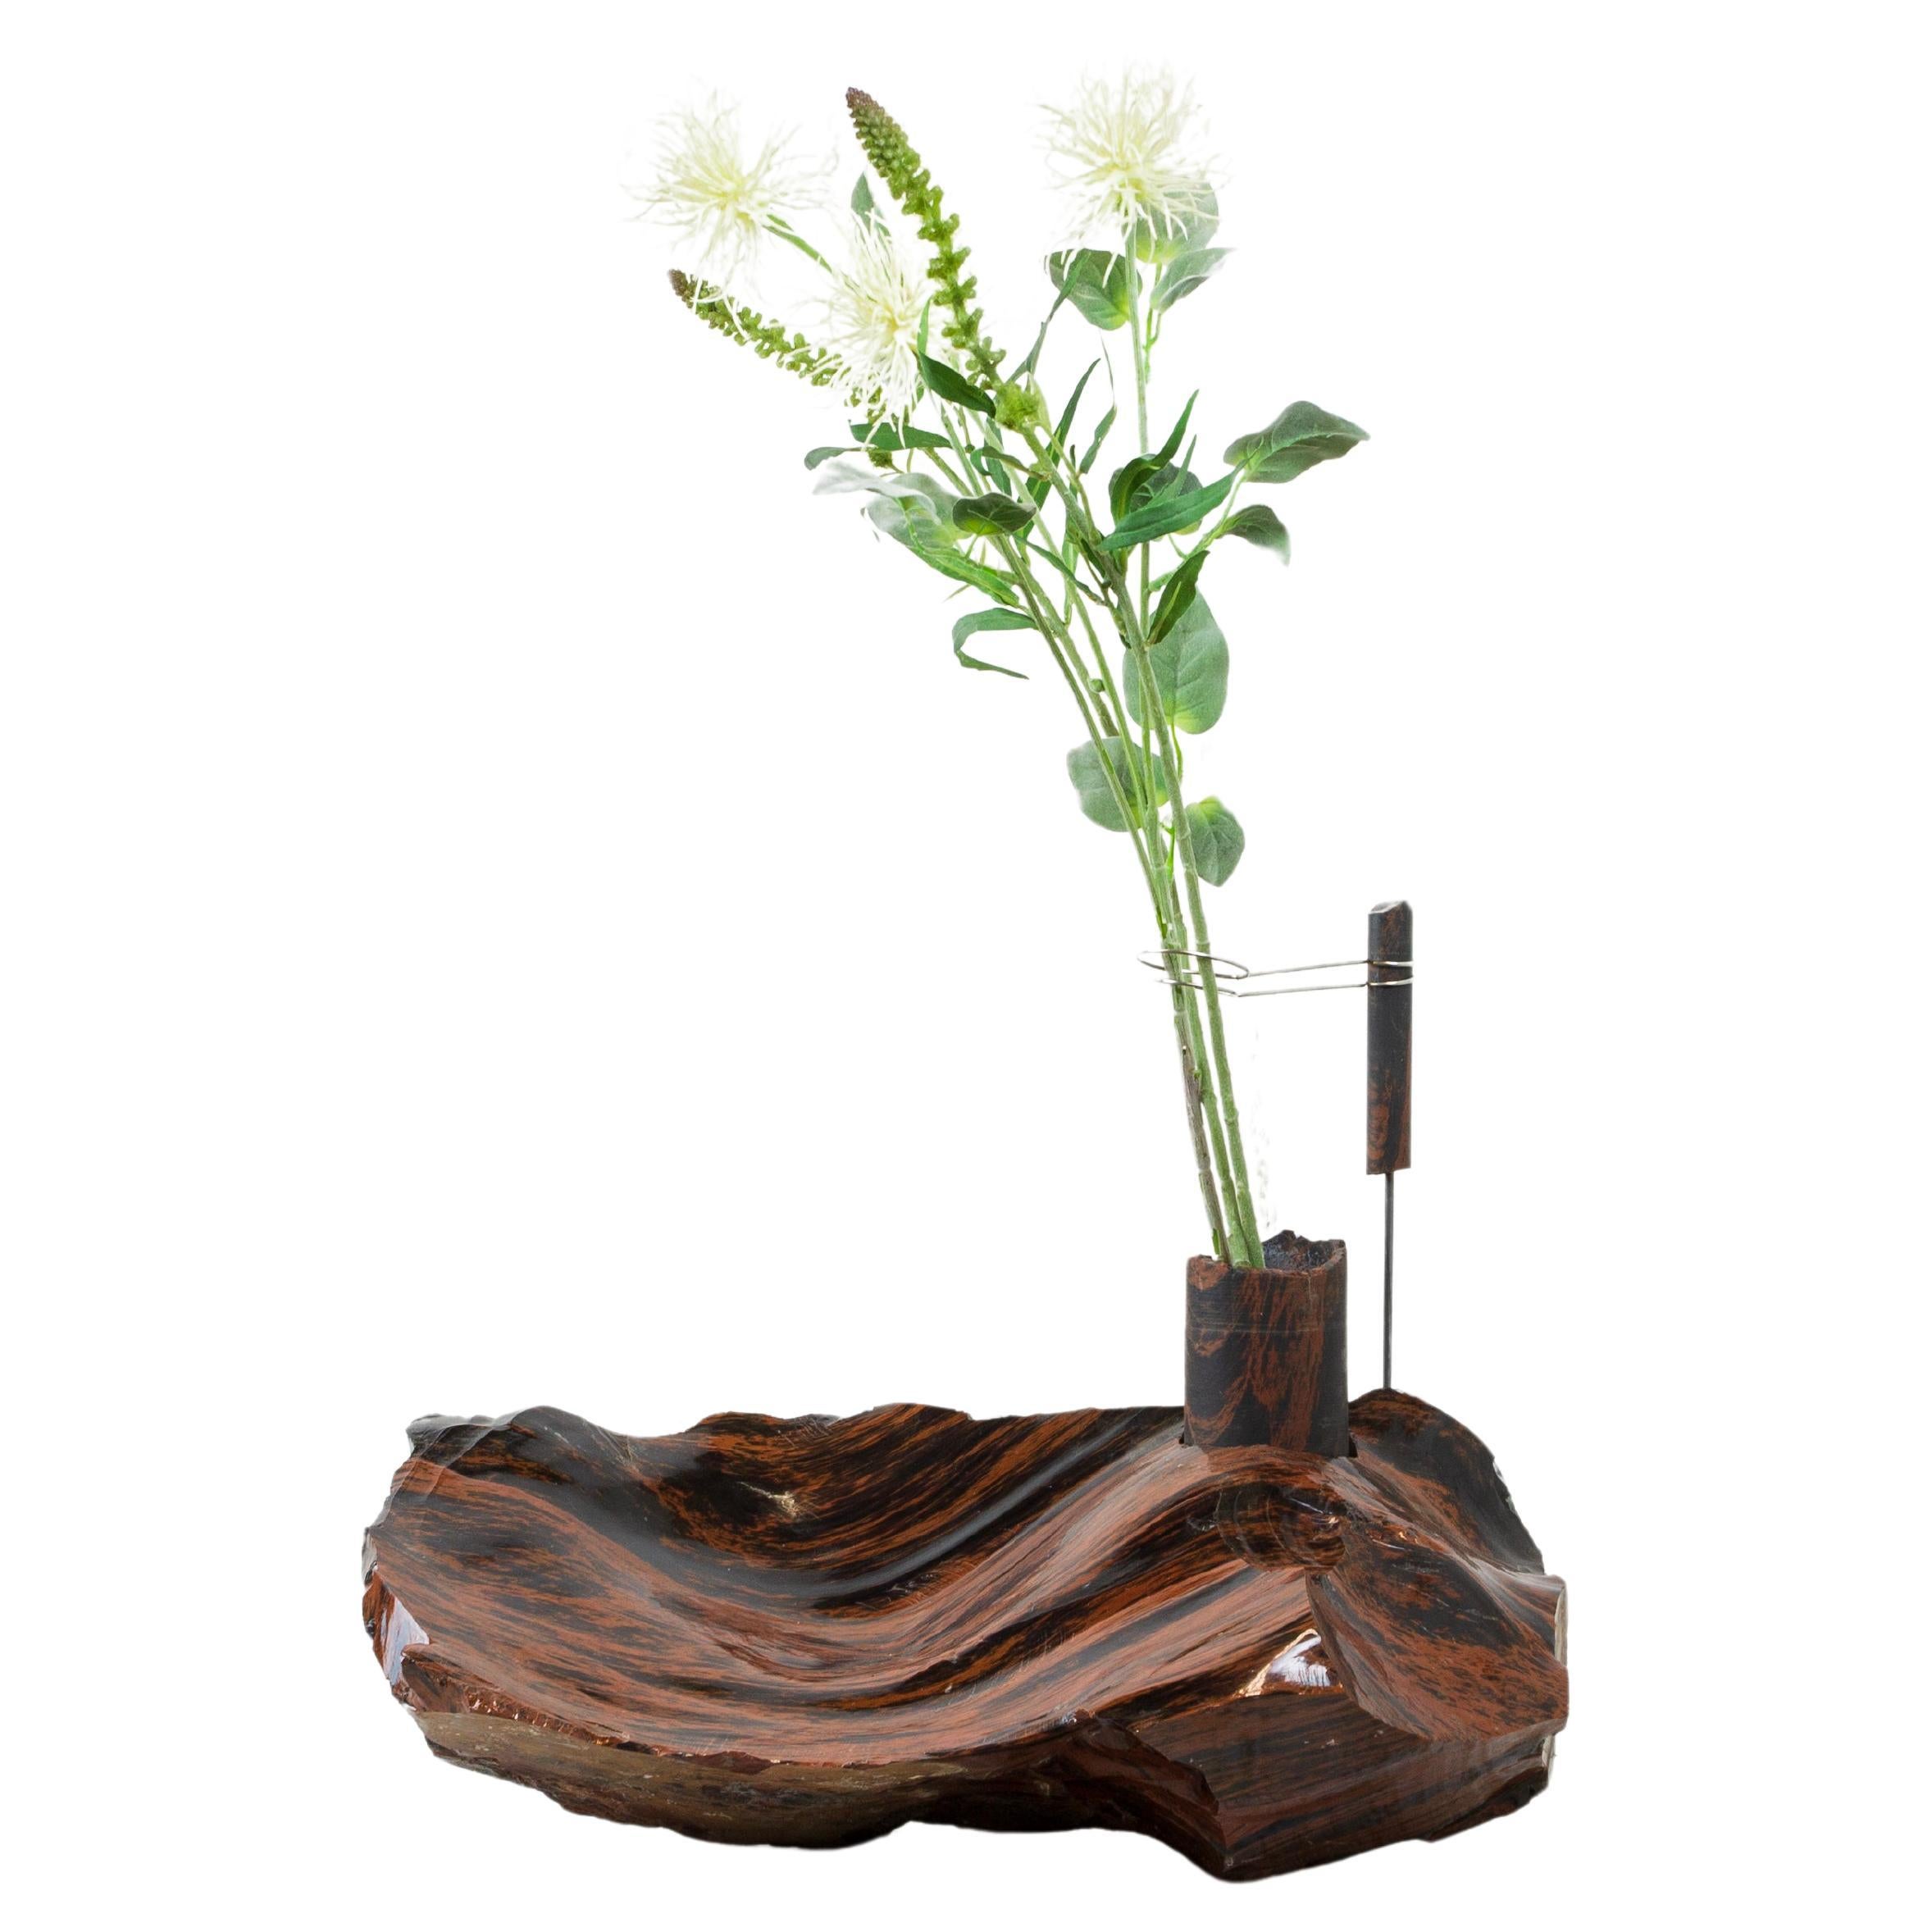 Vase à fleurs obsidiennes en acajou par Studio DO